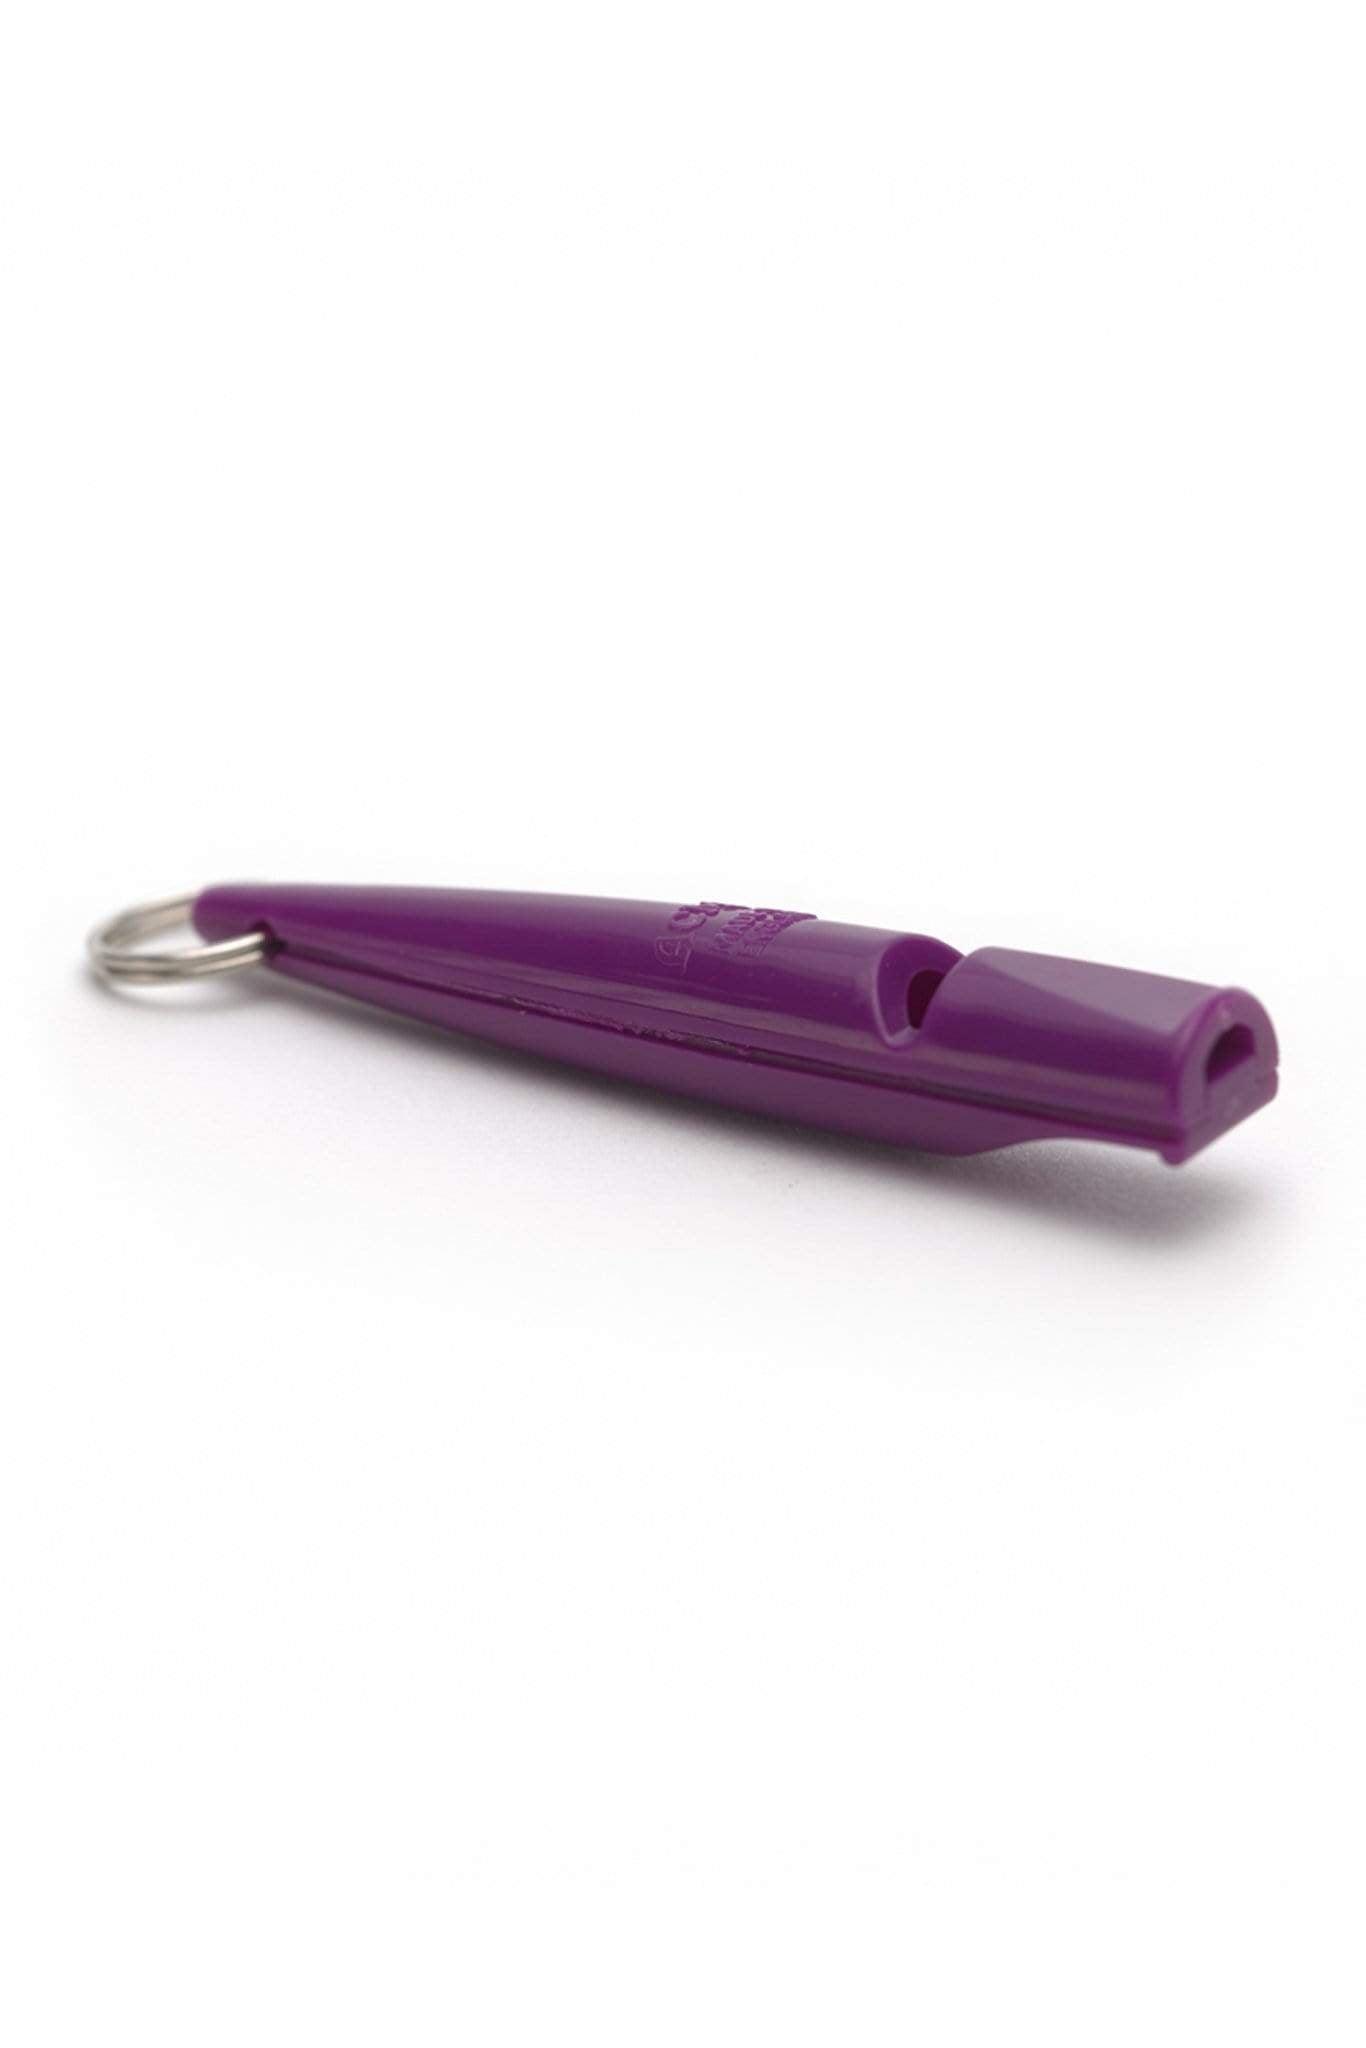 ACME Whistles &amp; Lanyards Purple ACME Dog Training Whistle 210.5 - Purple